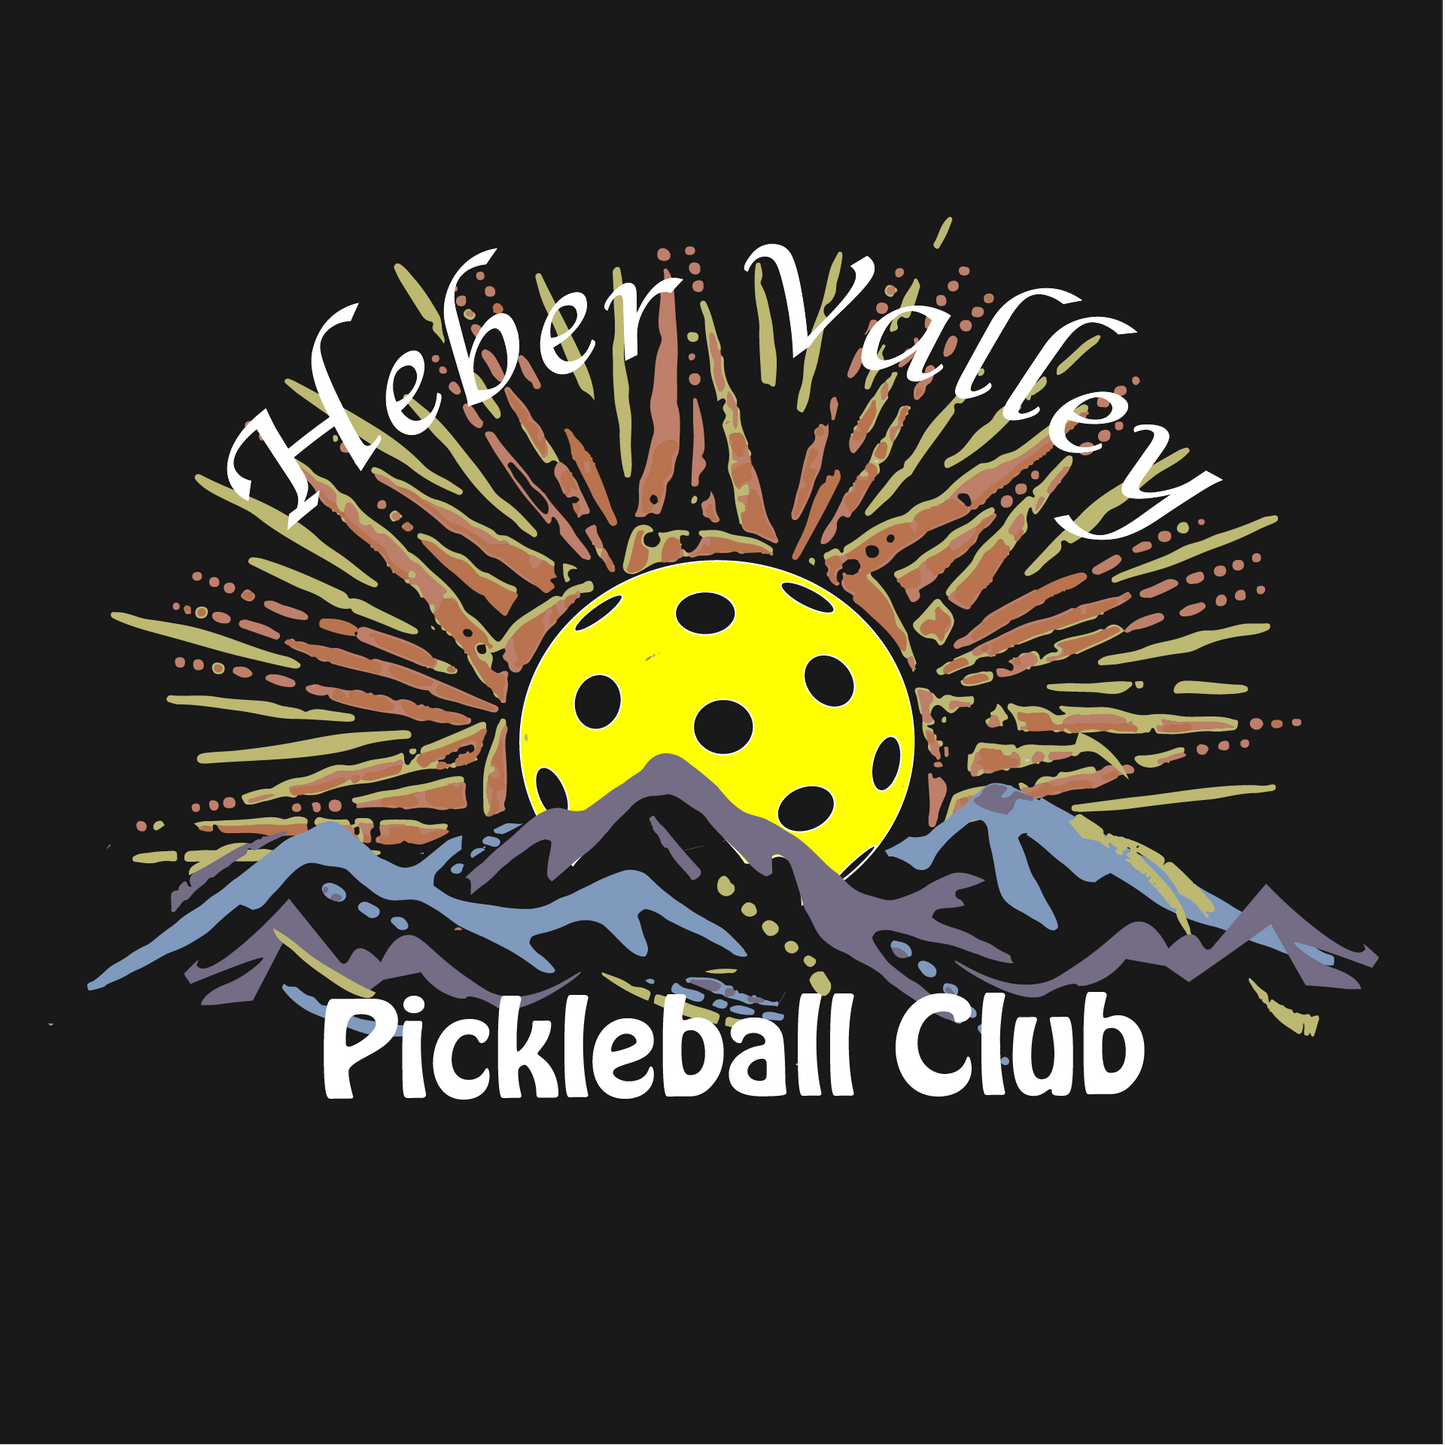 Heber Valley Pickleball Club (Large) | Men's Long Sleeve Pickleball Shirt | 100% Polyester